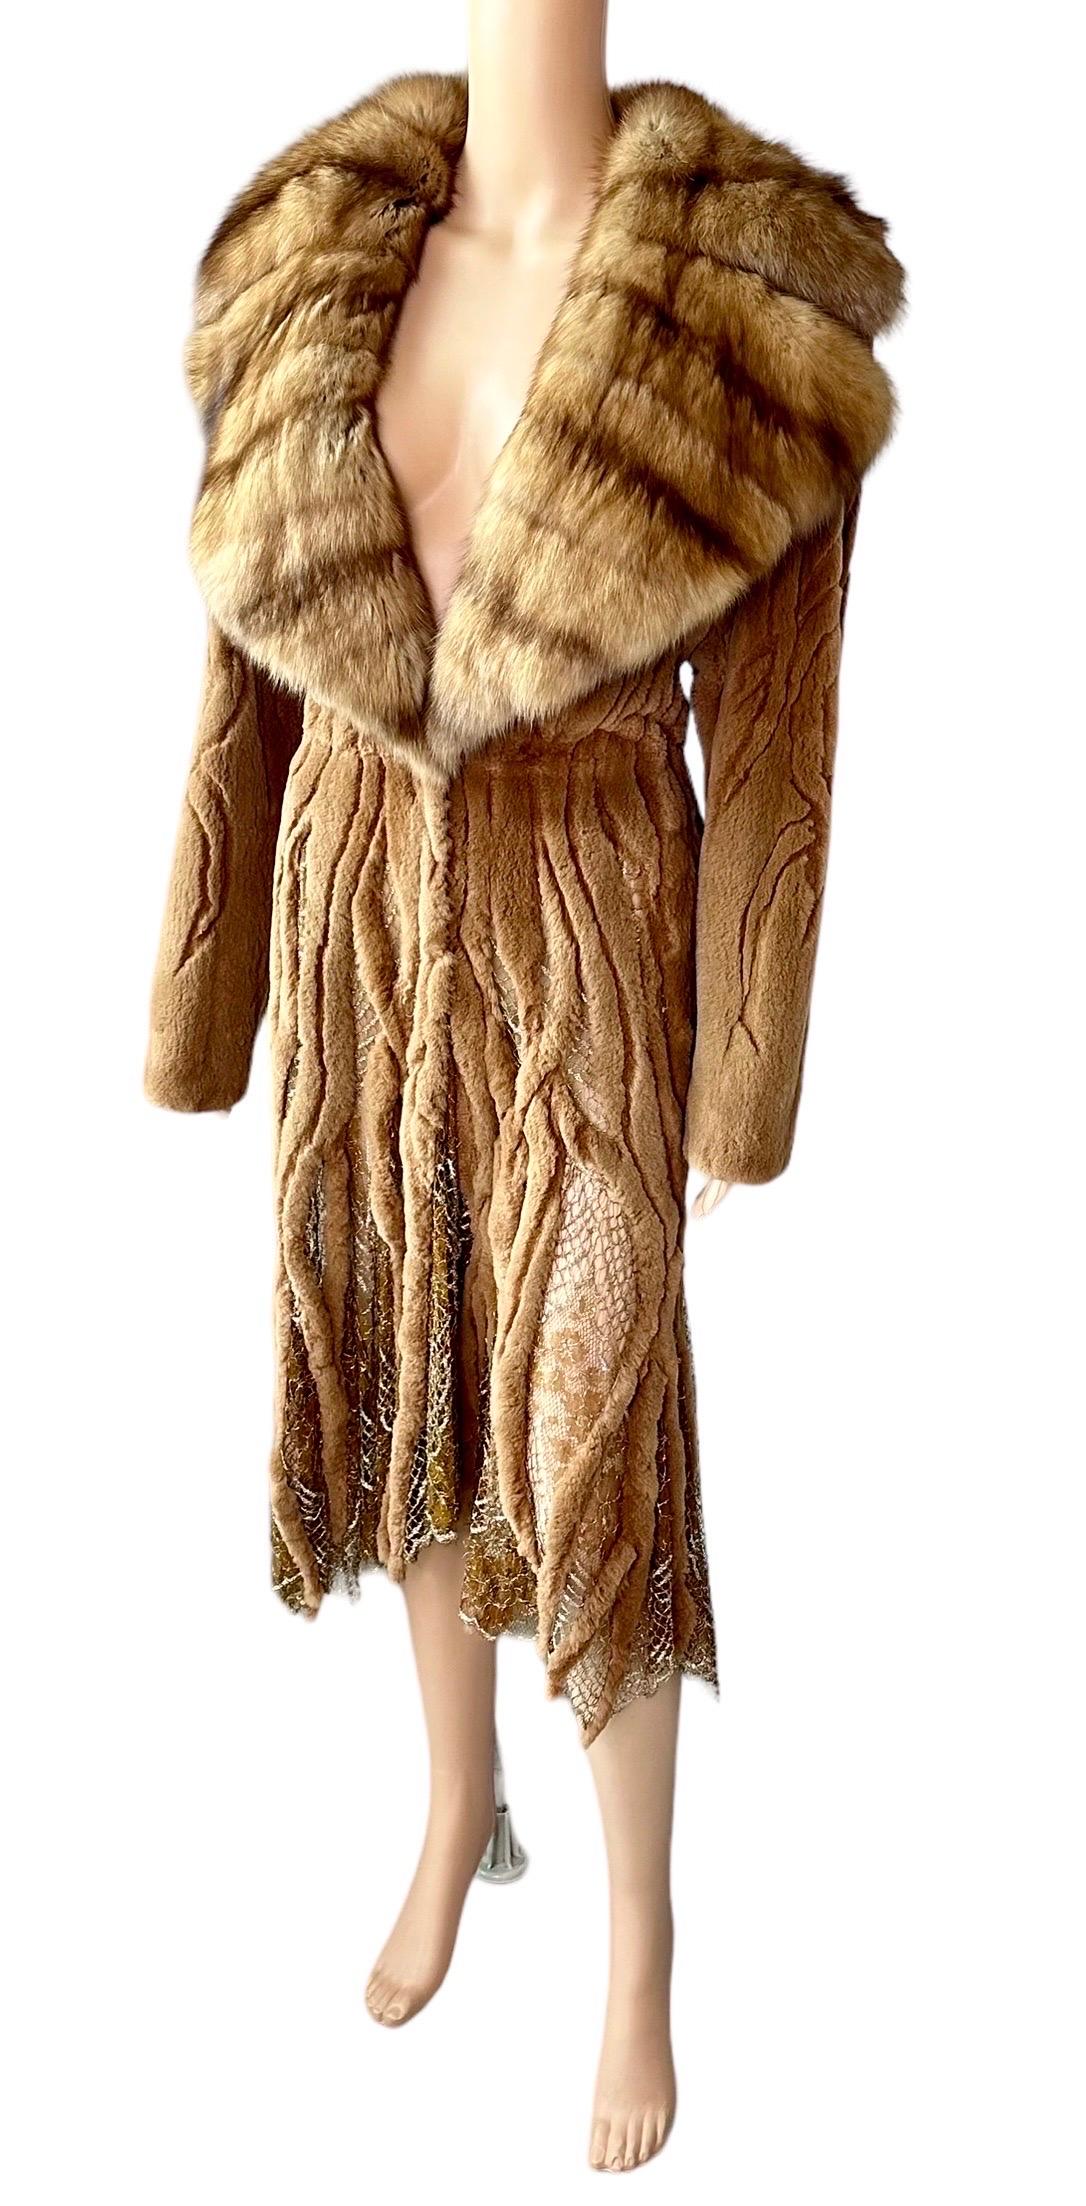 Atelier Gianni Versace c.1996 Fur Cutout Sheer Lace Mesh Panels Jacket Coat For Sale 8